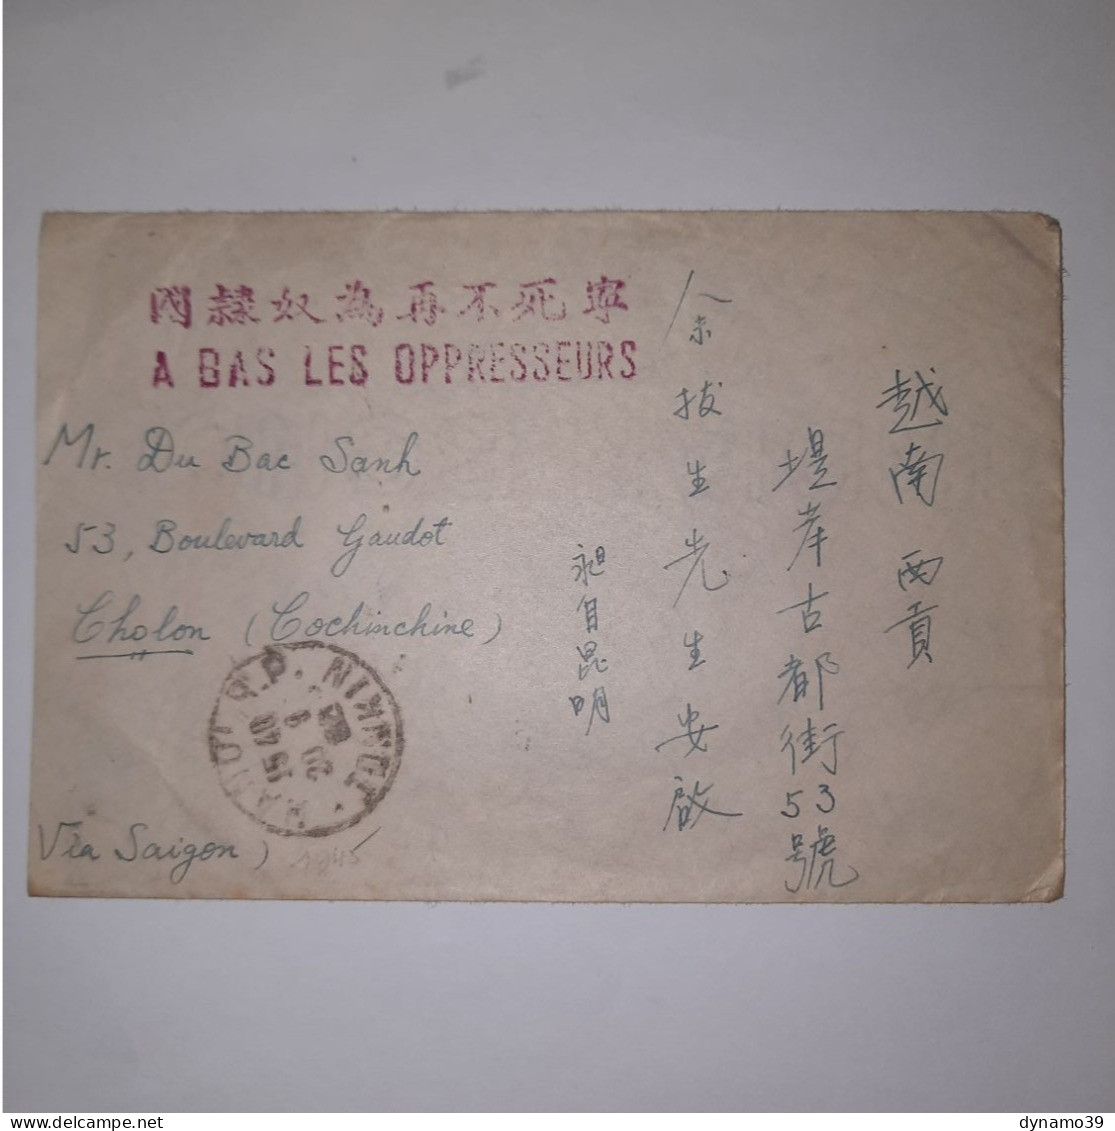 03K6 RARE - ANCIENNE LETTRE ENVELOPPE INDOCHINE 1945 CACHET A BAS LES OPPRESSEURS - Autres - Asie